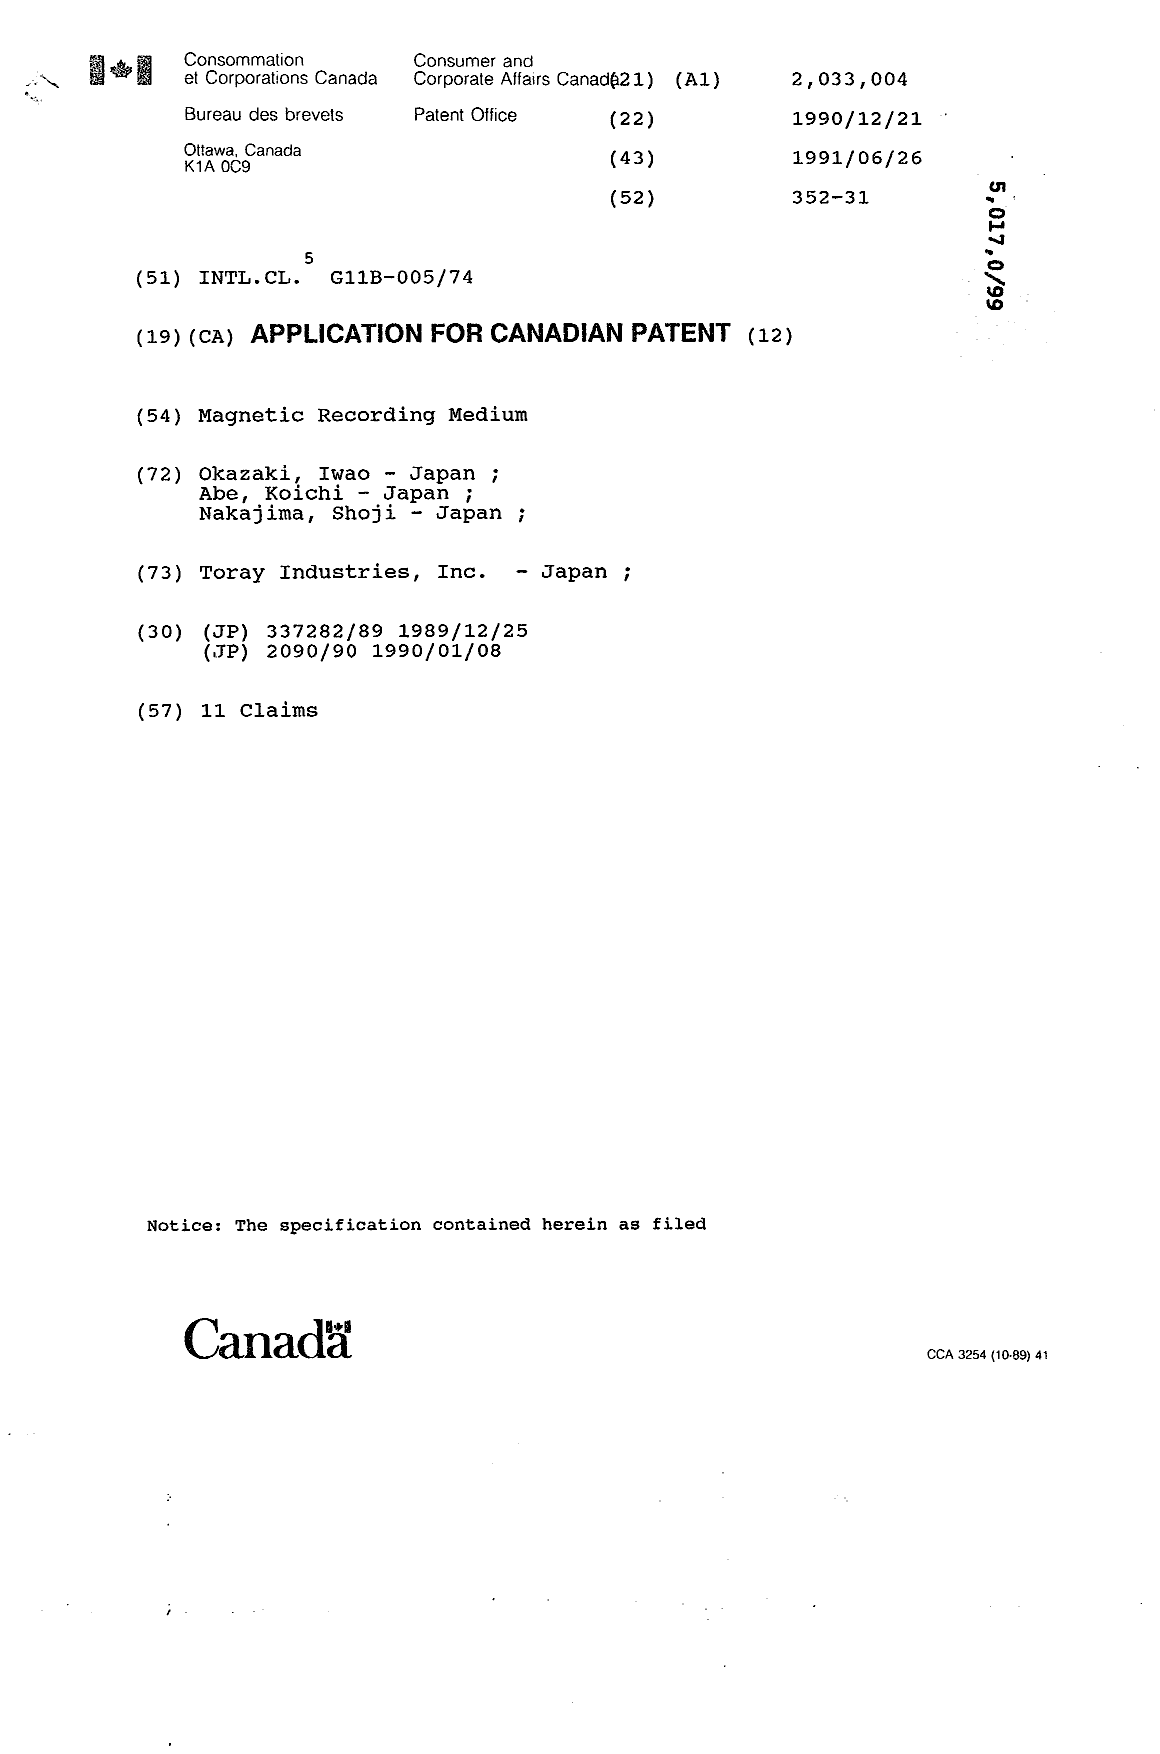 Document de brevet canadien 2033004. Page couverture 19931215. Image 1 de 1